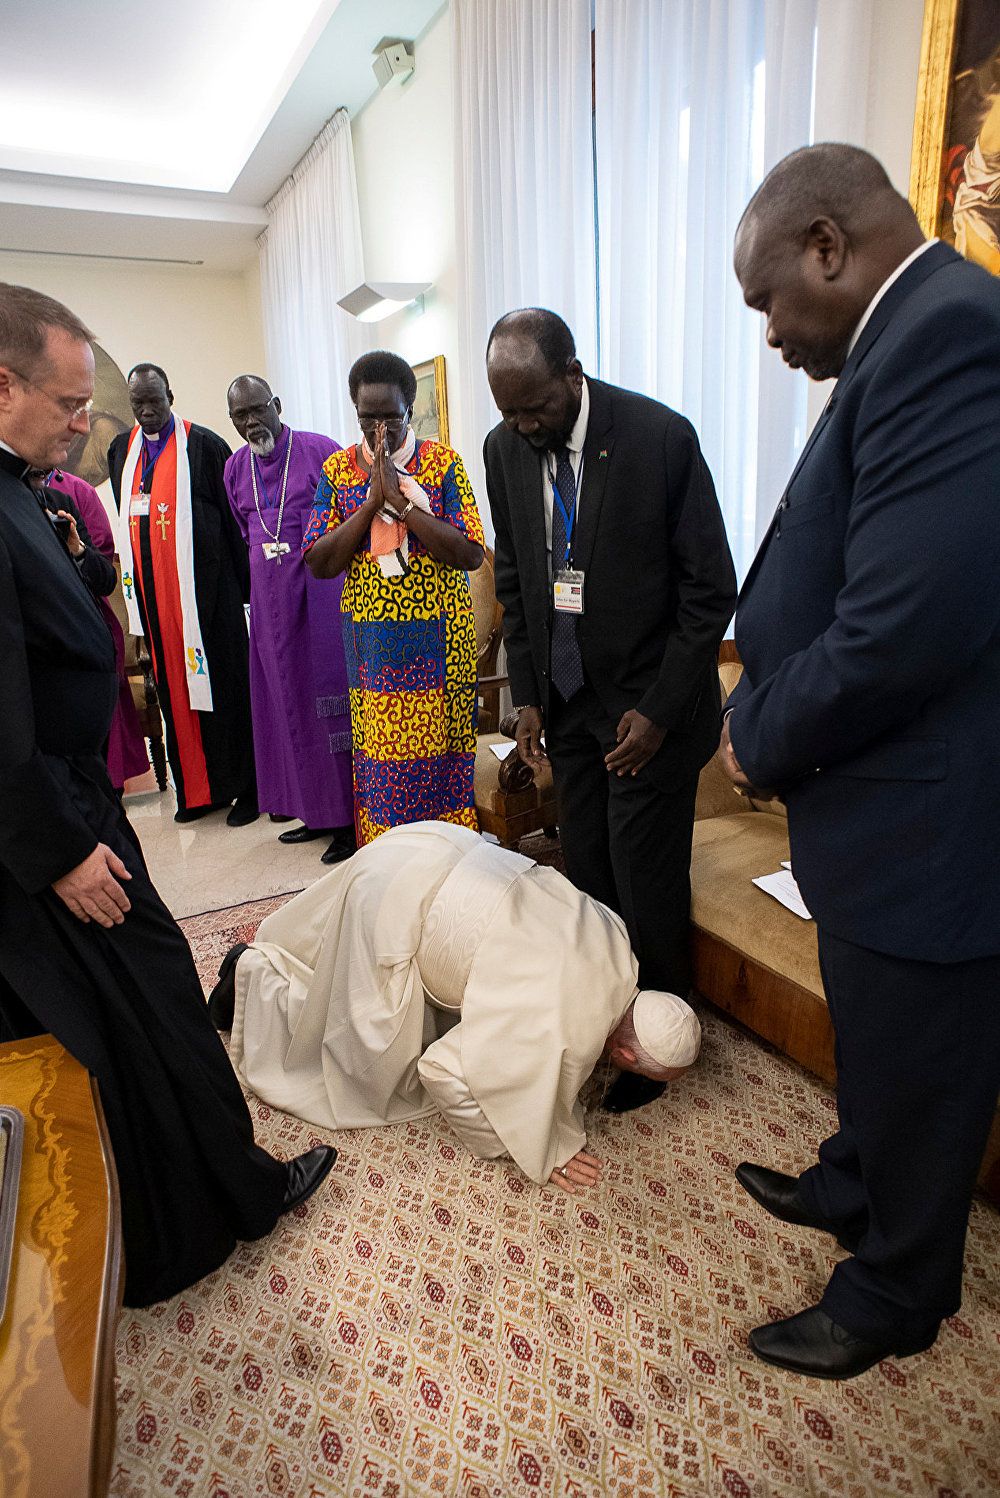 البابا فرنسيس يقبل أقدام زعماء جنوب السودان في الفاتيكان، 11 نيسان/أبريل 2019